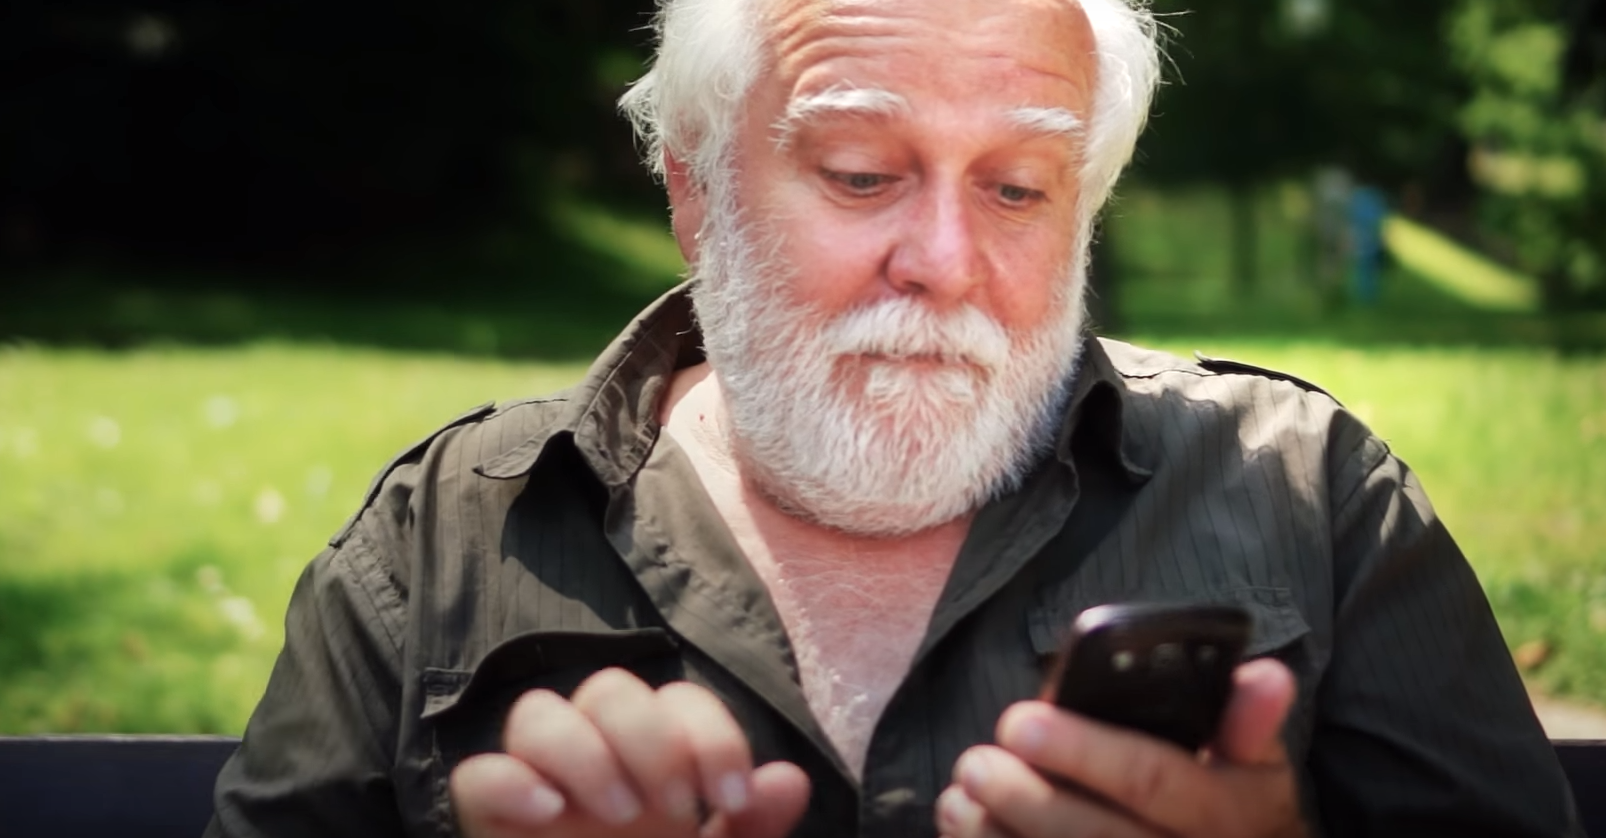 Cómo adaptar el móvil para personas mayores